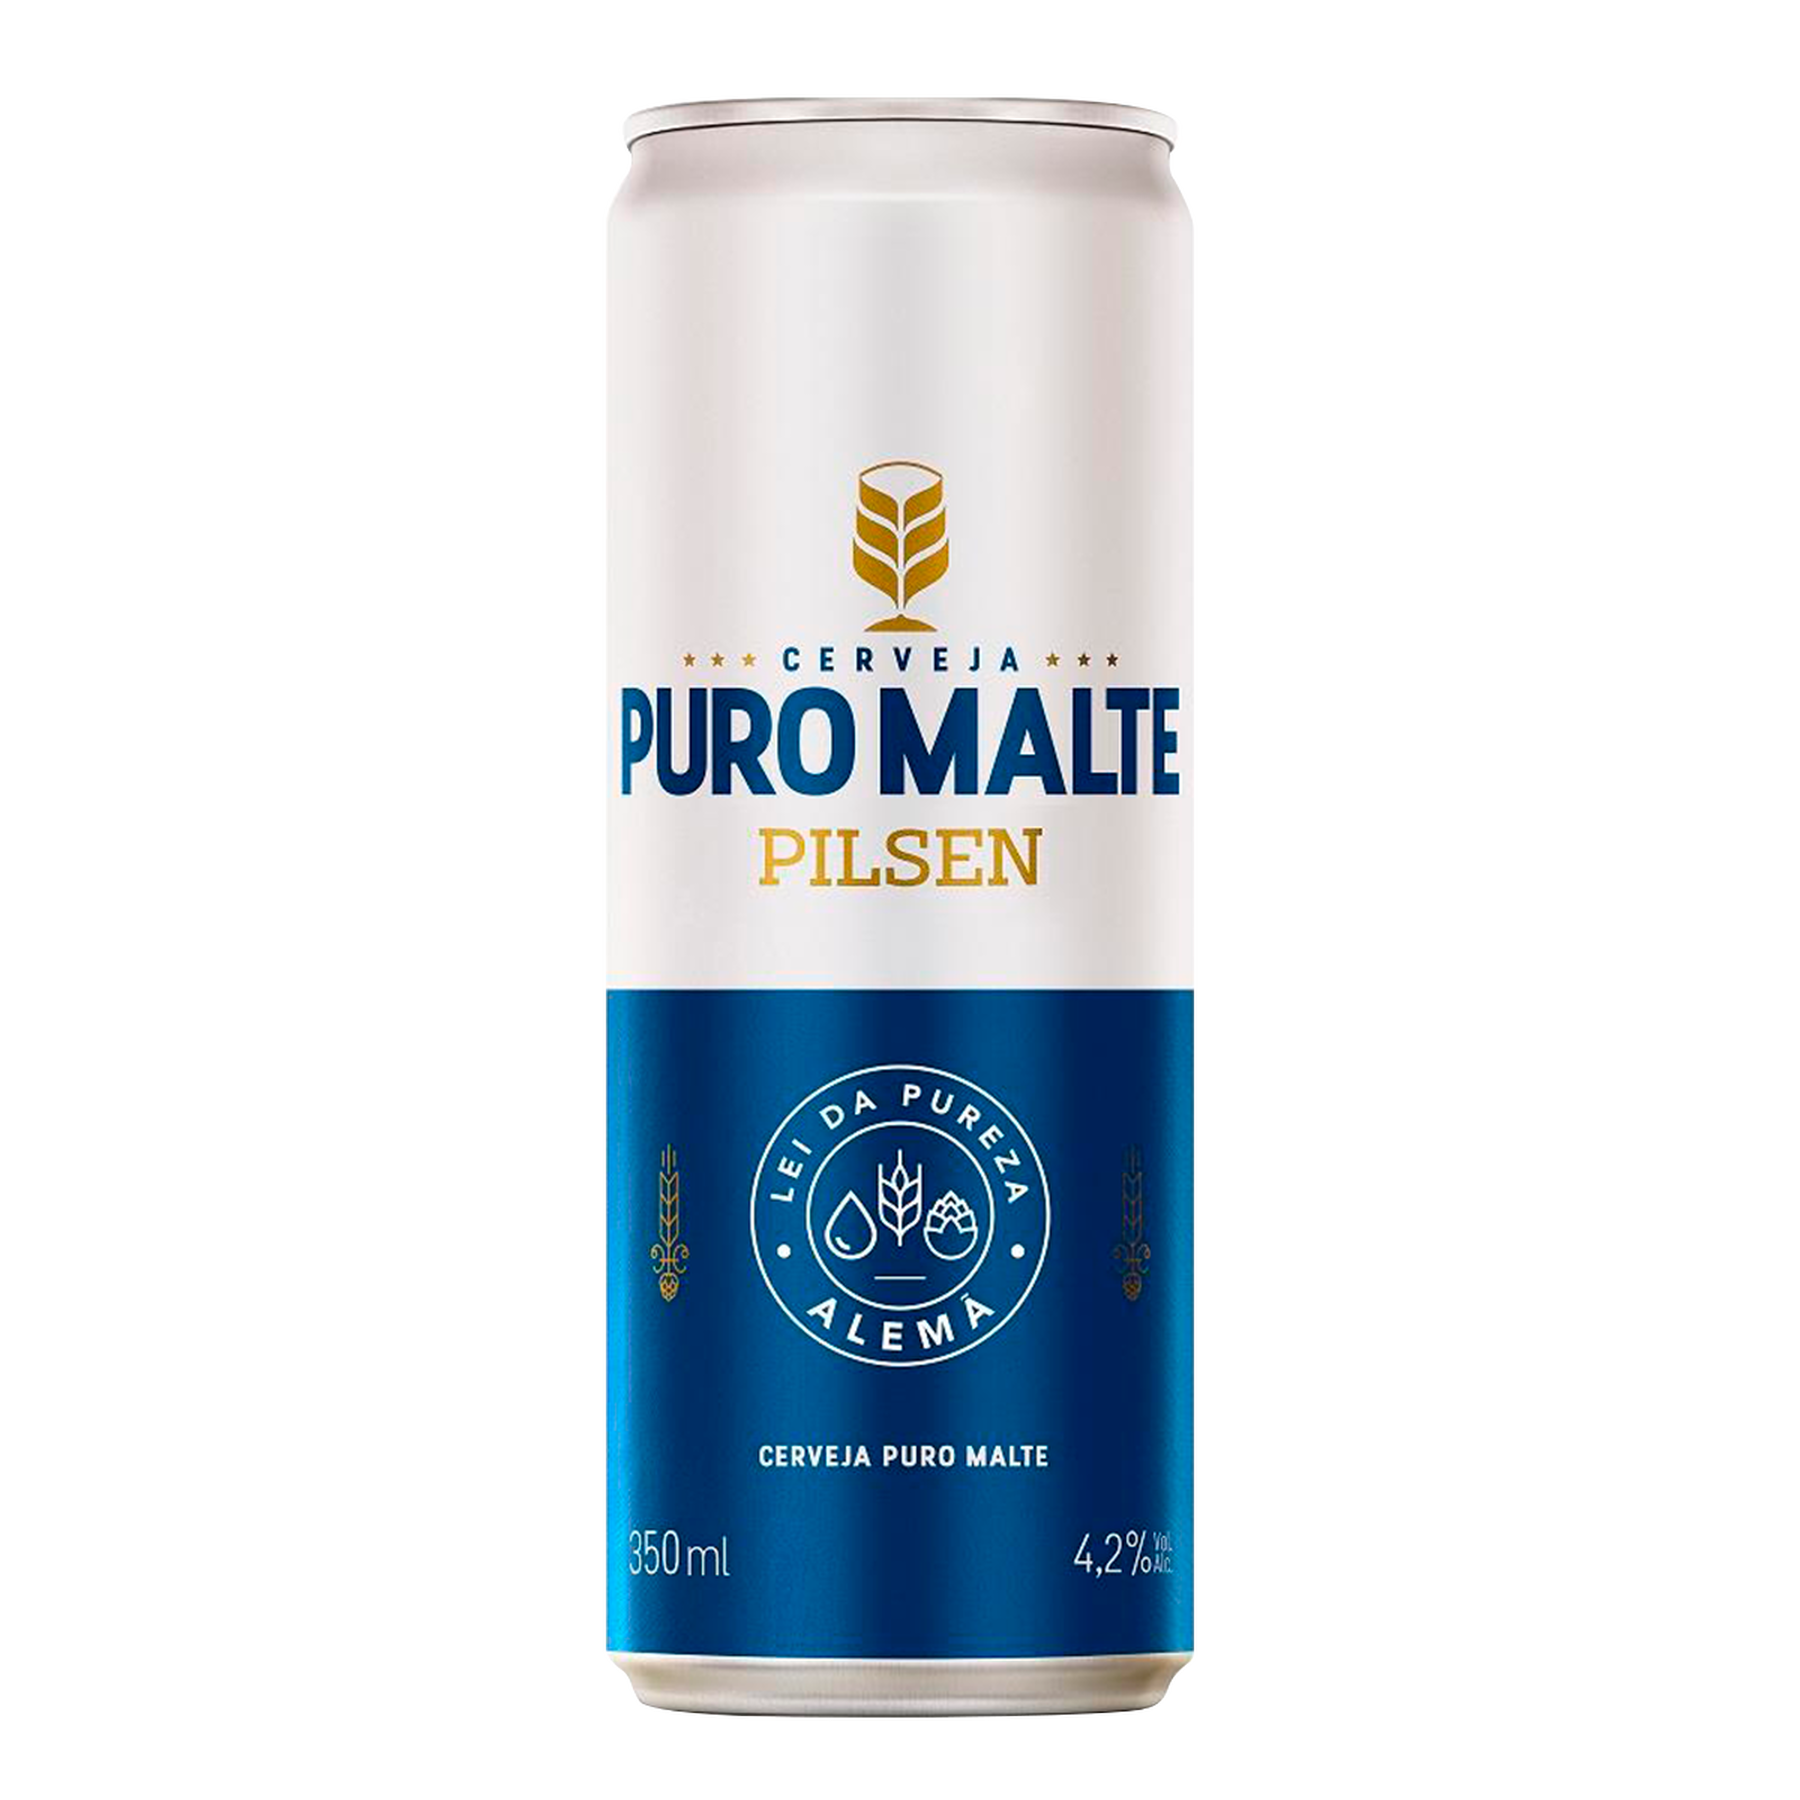 Cerveja Puro Malte Pilsen Lata 350ml